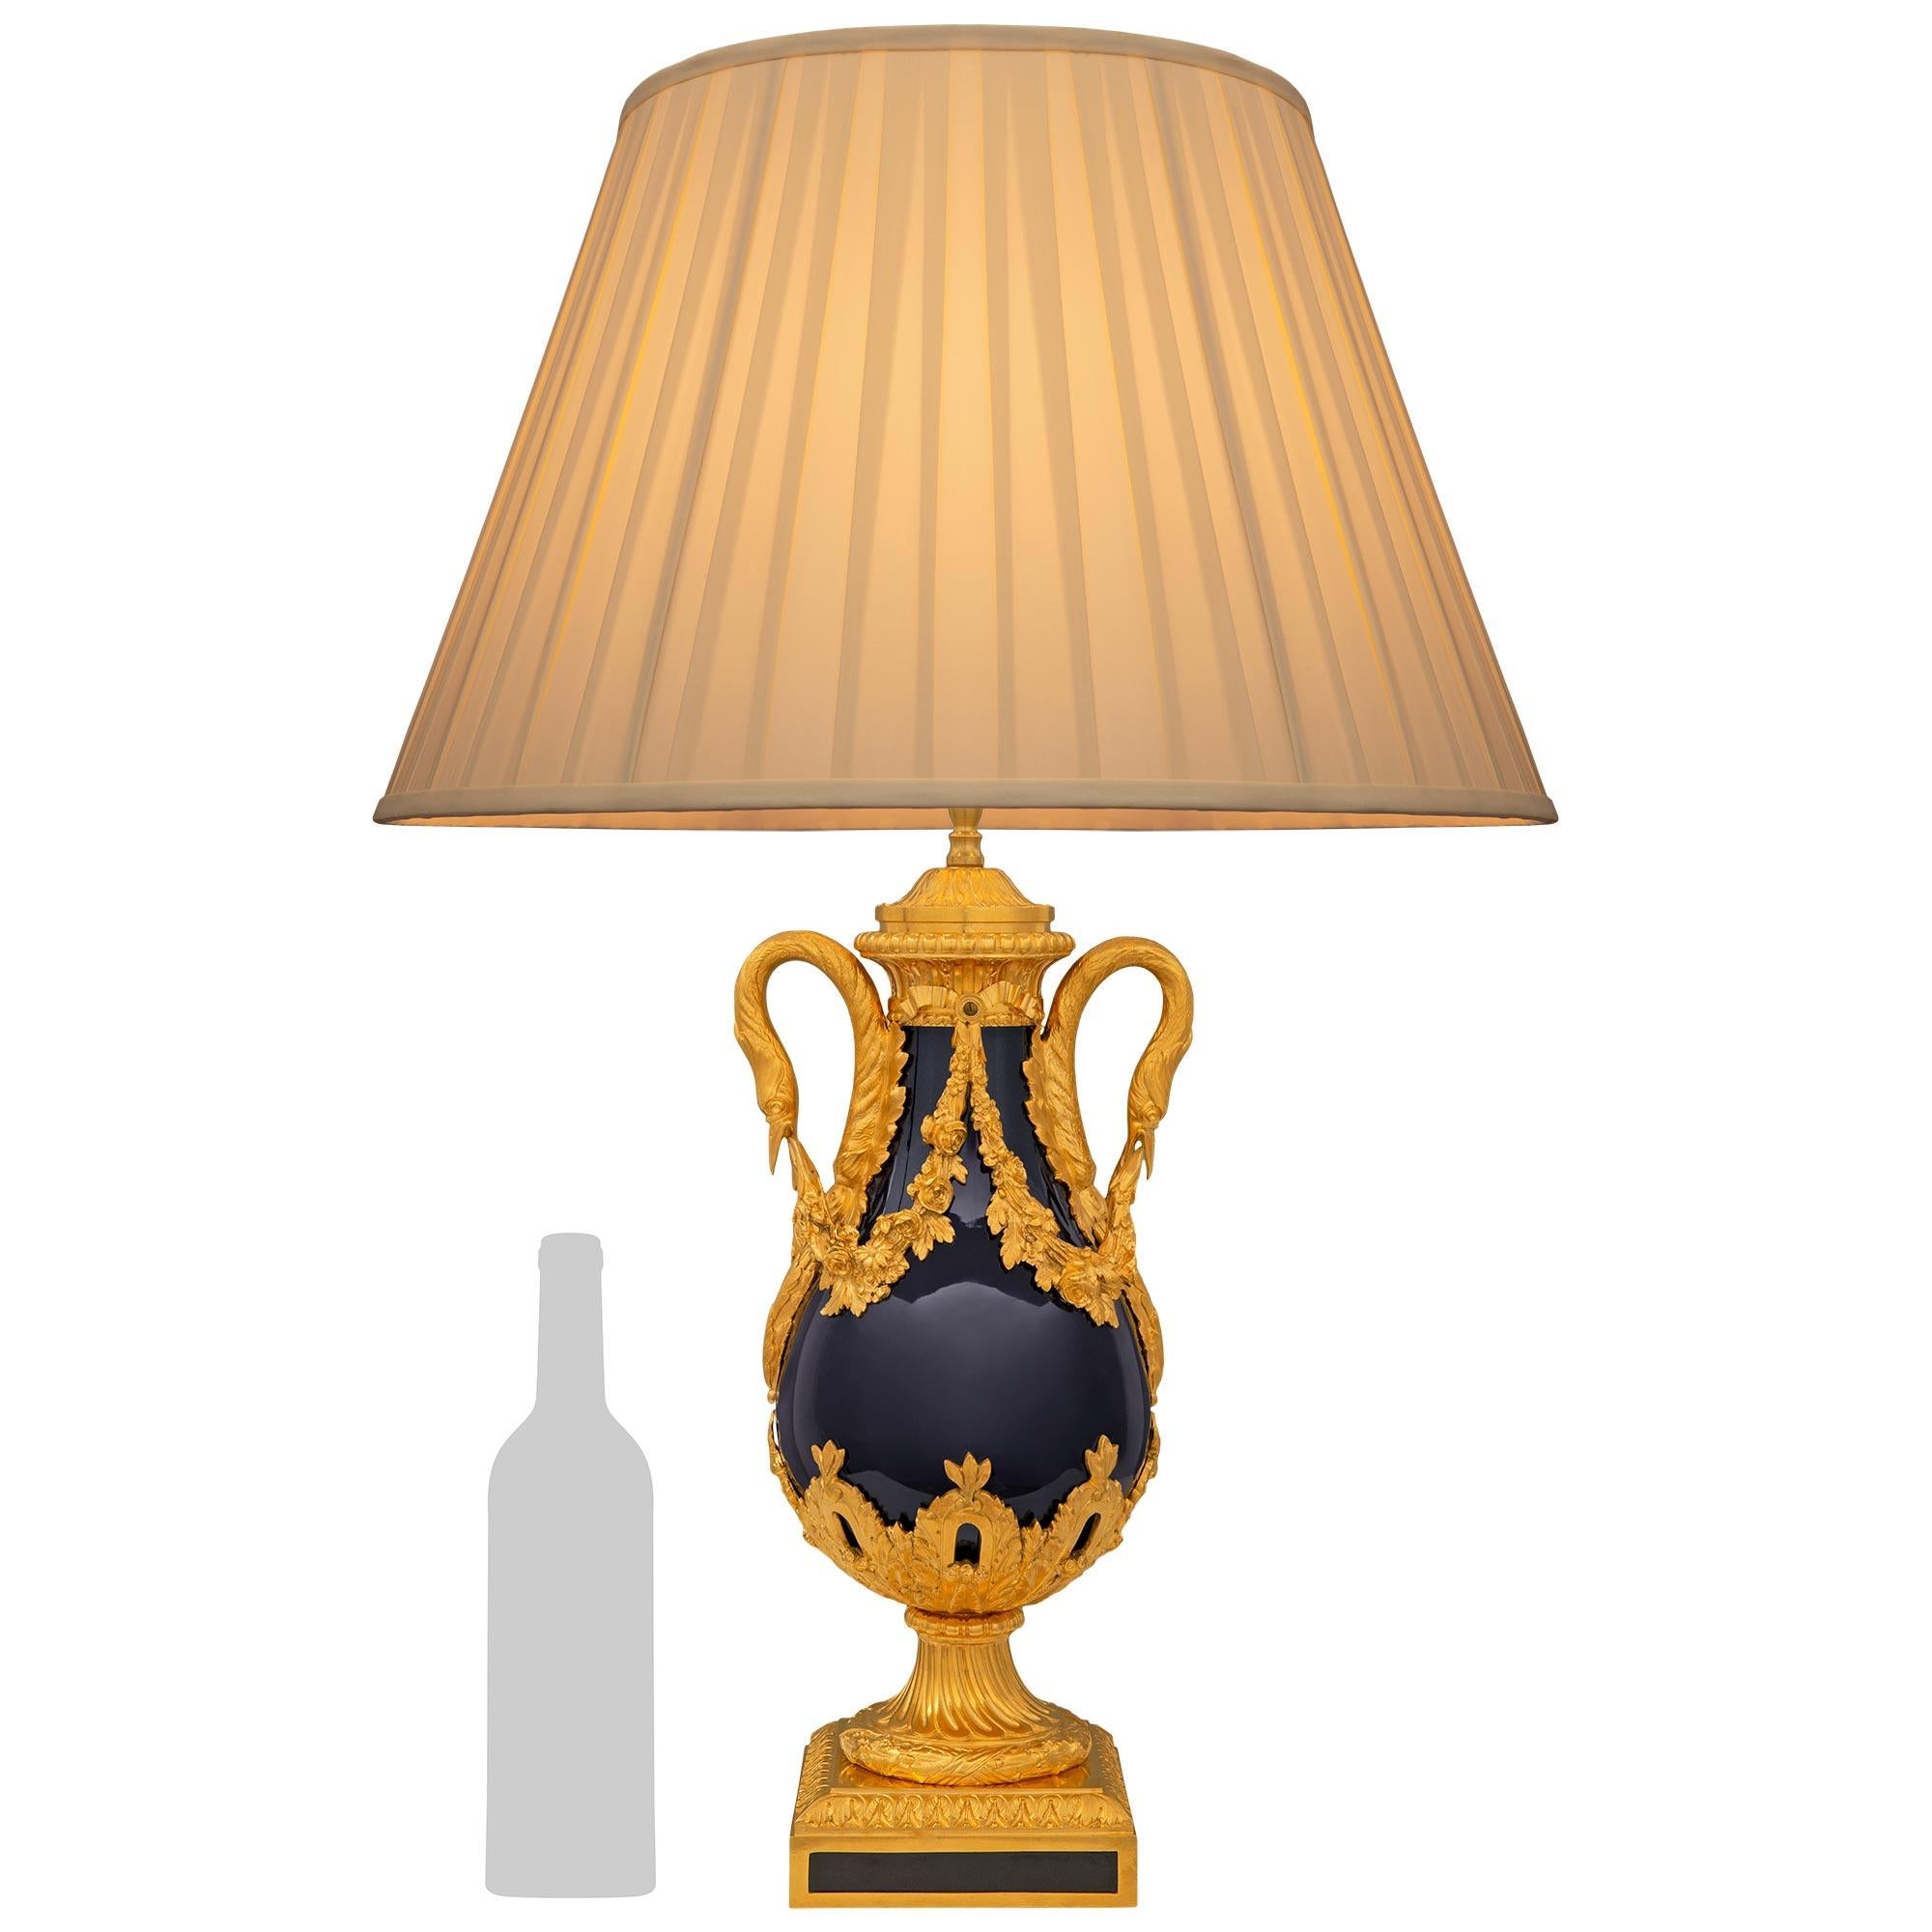 Lampe en porcelaine de Sèvres et bronze d'orfèvrerie de très grande qualité et de style Louis XVI du XIXe siècle. La lampe repose sur une base carrée en bronze doré avec d'élégantes et uniques plaques de porcelaine ajustées de chaque côté, avec une